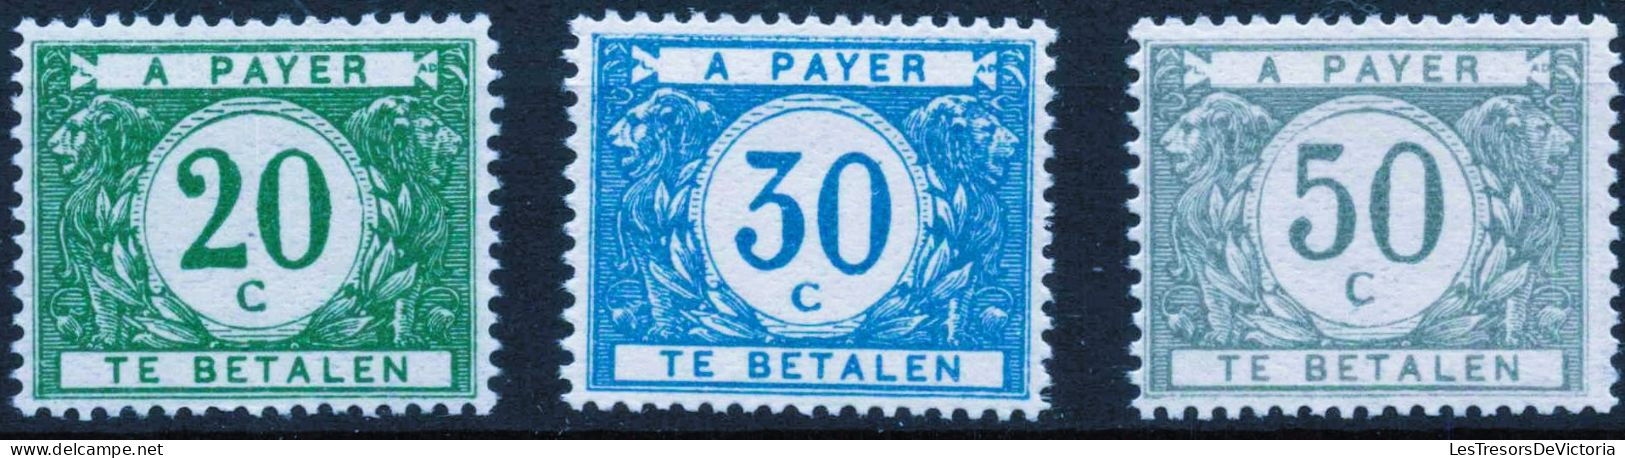 Timbres - Belgique - 1916 - Timbres Taxe - COB TX 12/16* - Cote 515 - Francobolli